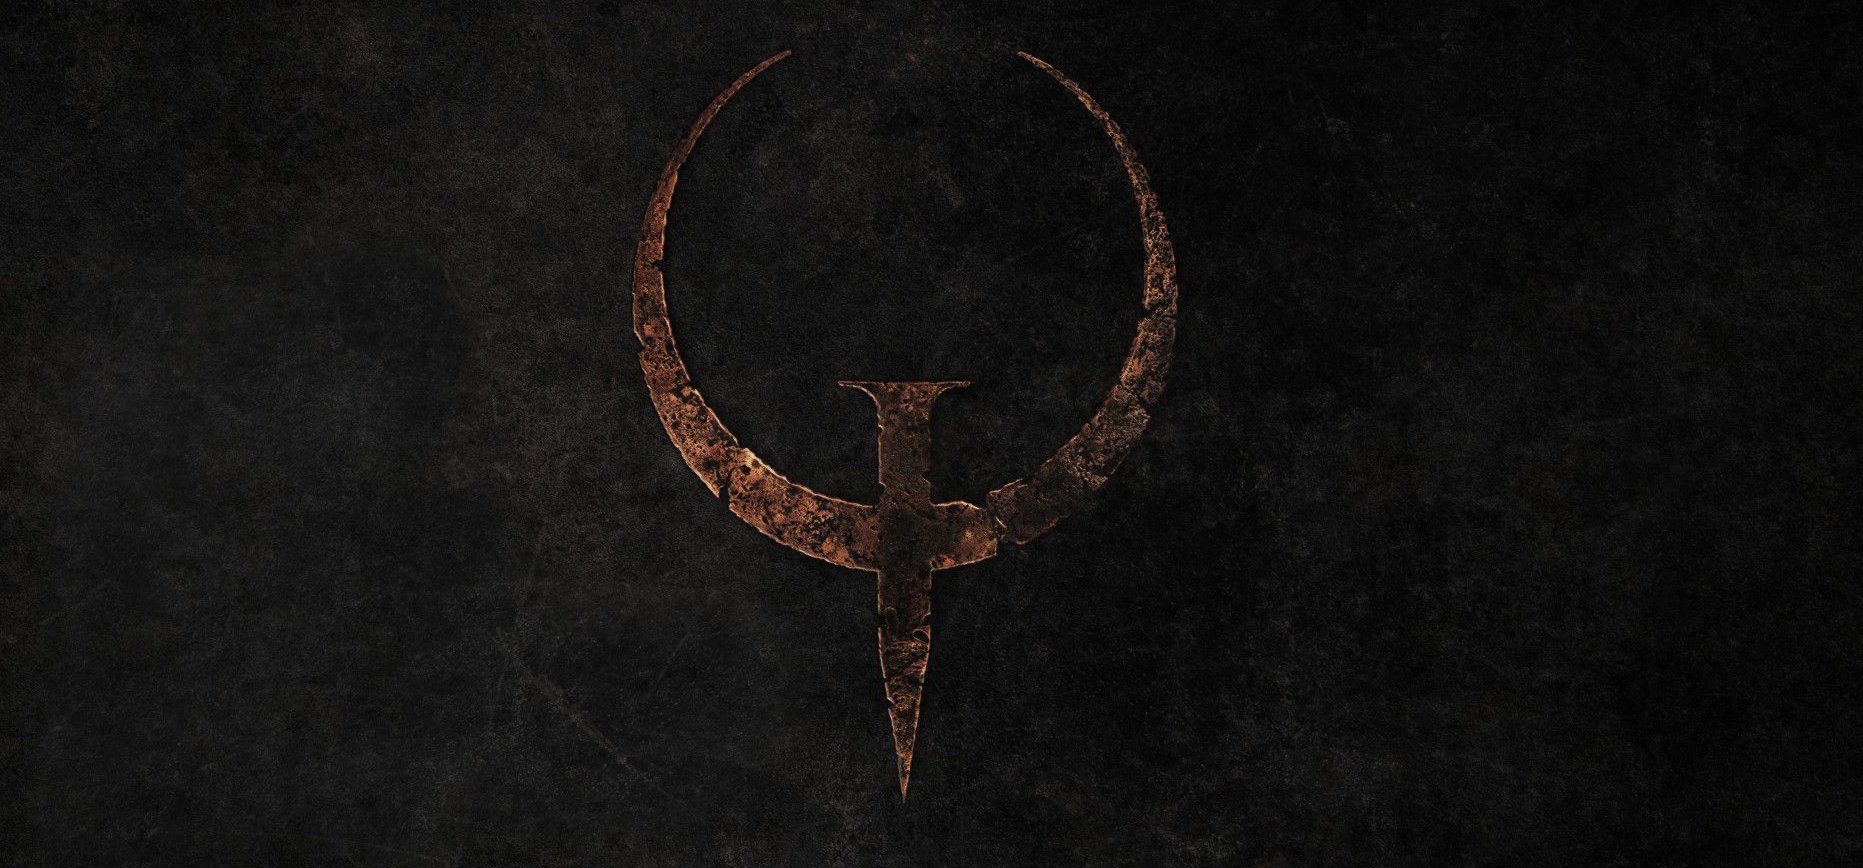 Quake Remastered teszt - John Carmack és Trent Reznor: két elképesztő legenda tér vissza az id Software 25 éves klasszikusának ráncfelvarrásában!